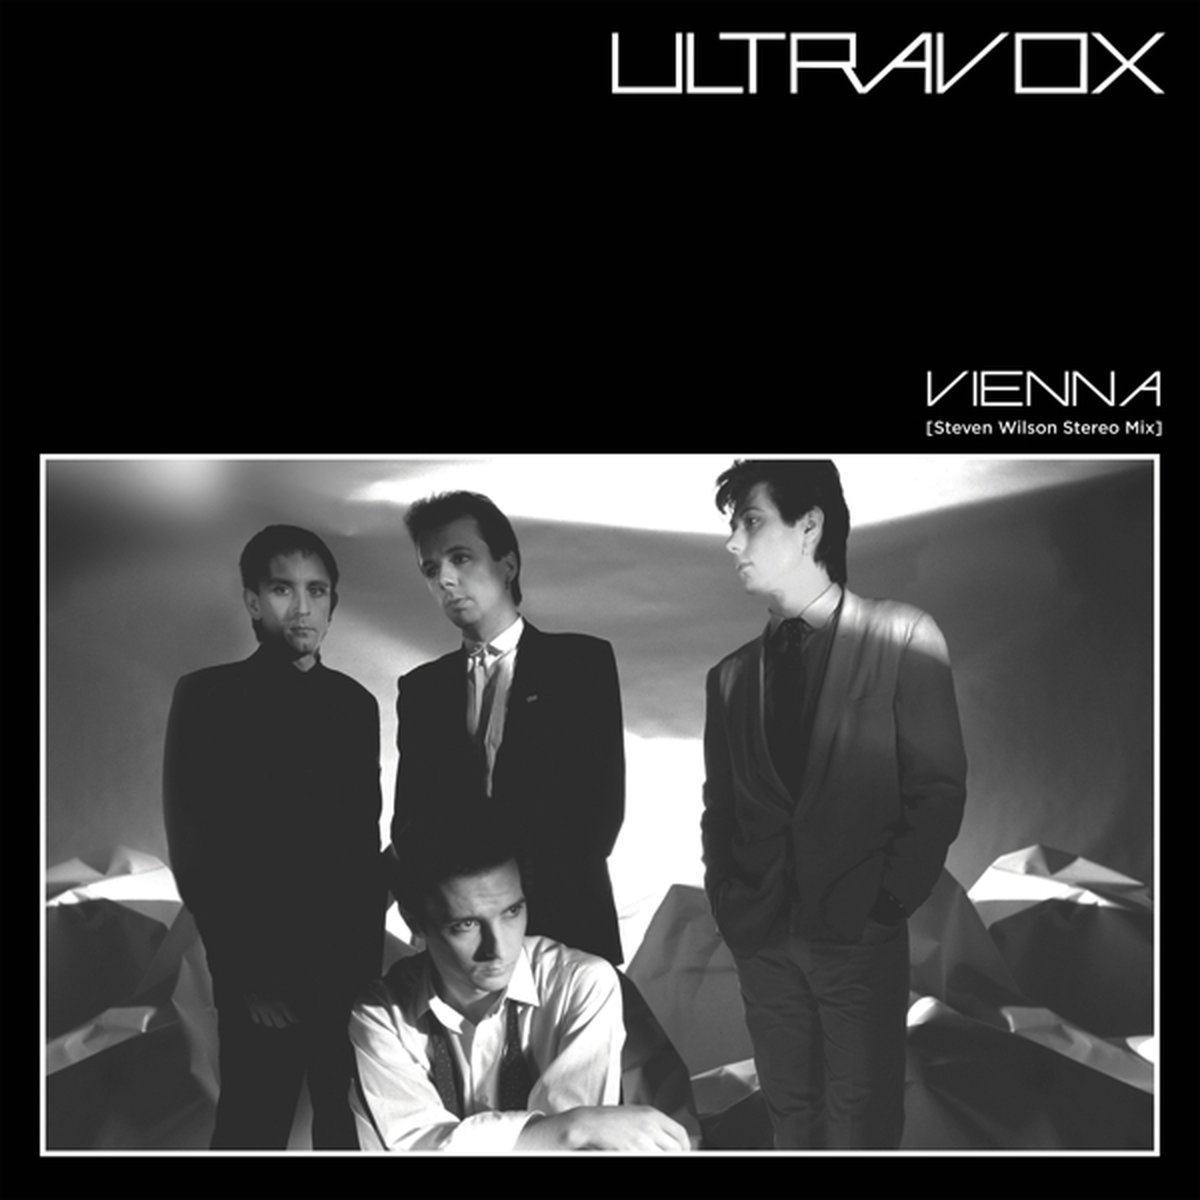 Ultravox - Vienna (Steven Wilson Mix) -Rsd- (CD) - Ultravox